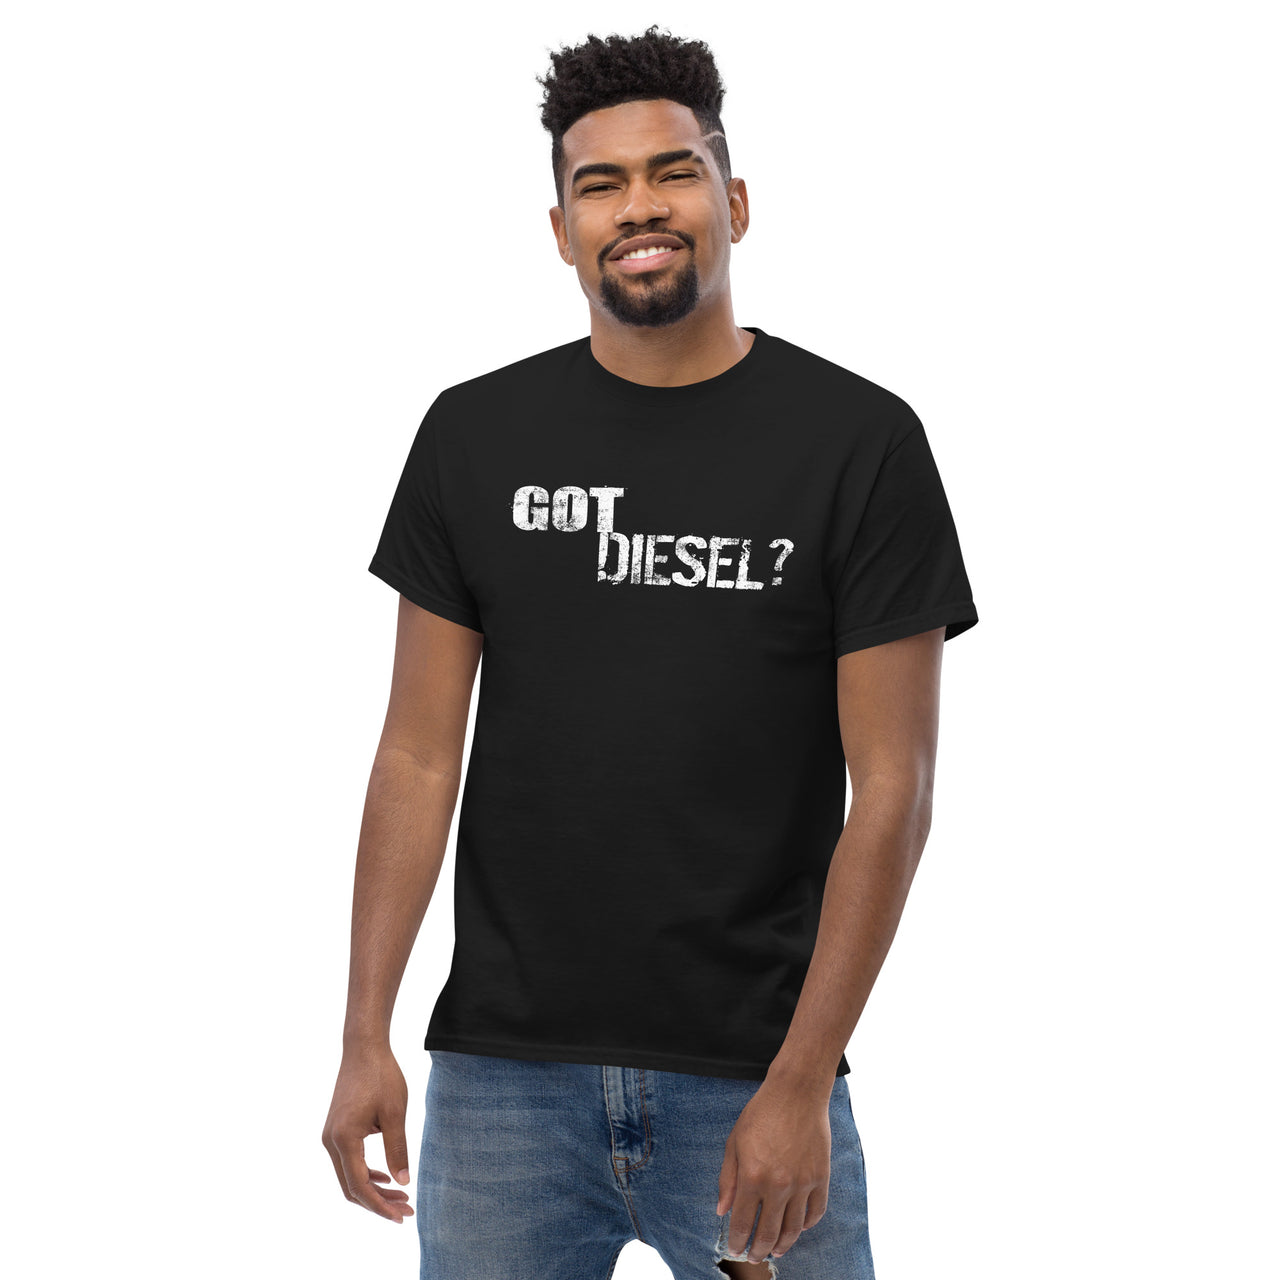 Got Diesel? Truck T-Shirt modeled in black